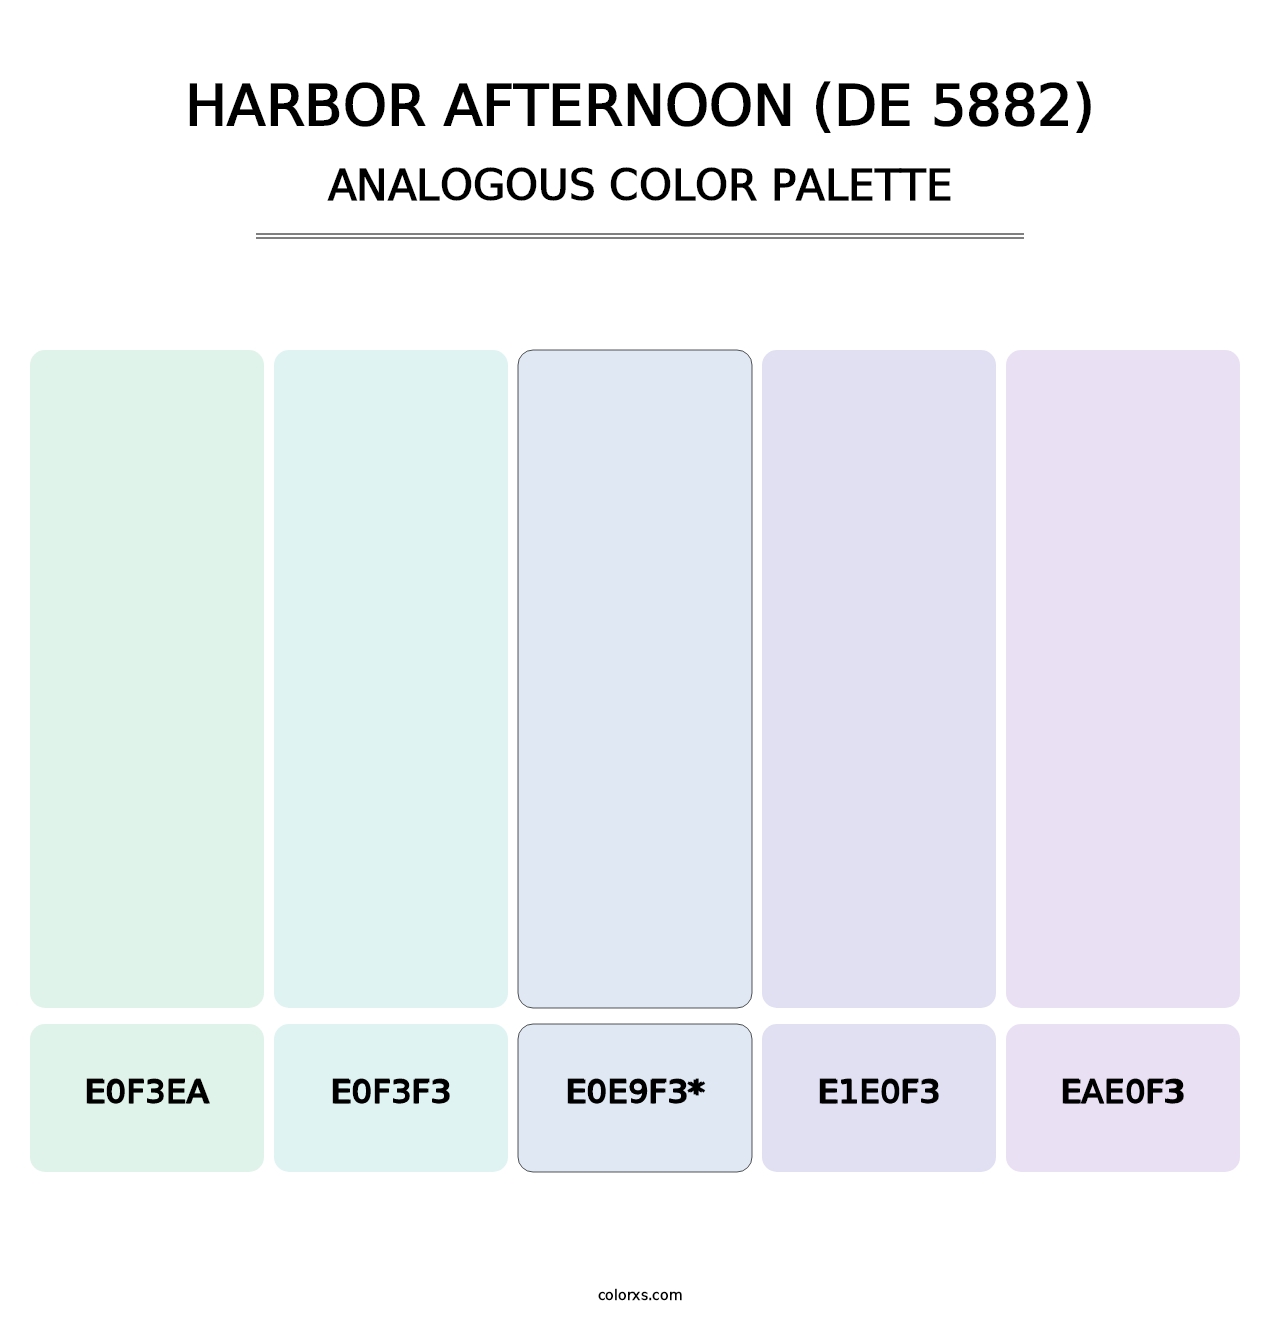 Harbor Afternoon (DE 5882) - Analogous Color Palette